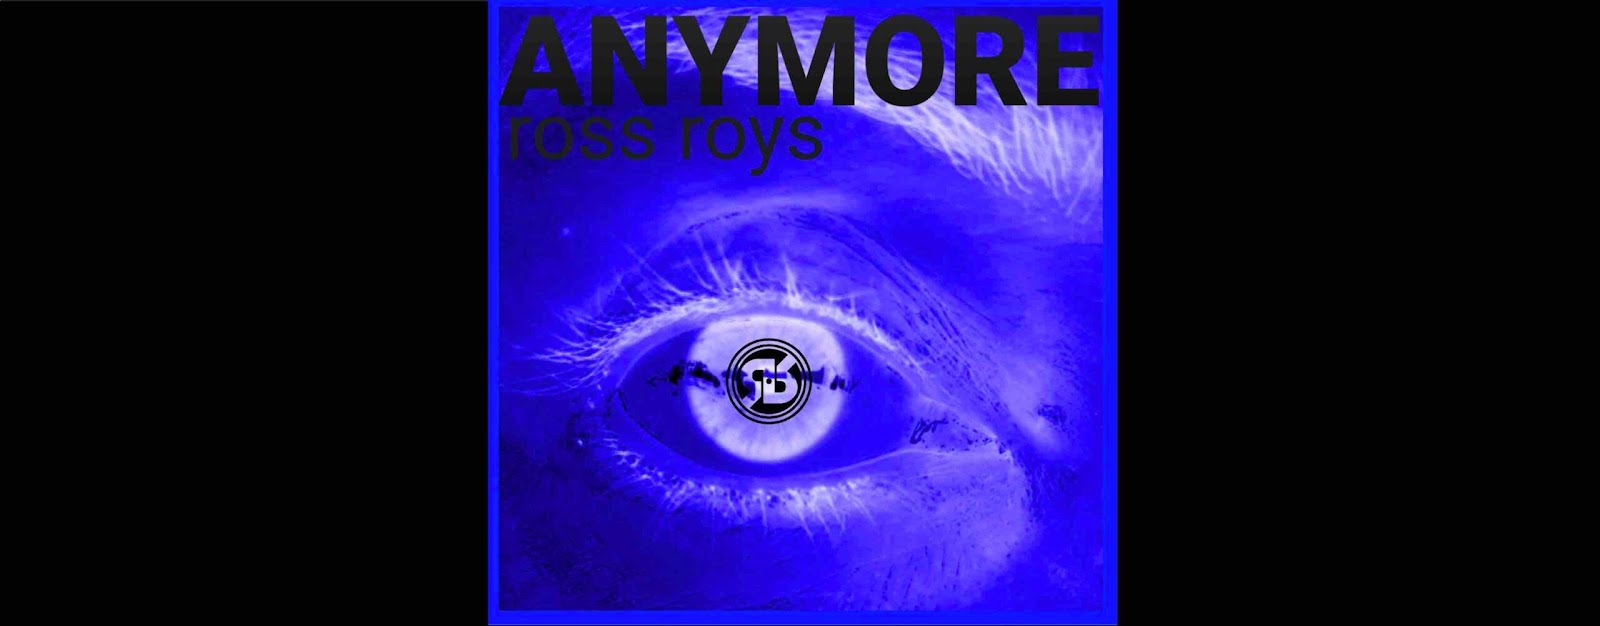 Ross Roys, il nuovo singolo è Anymore